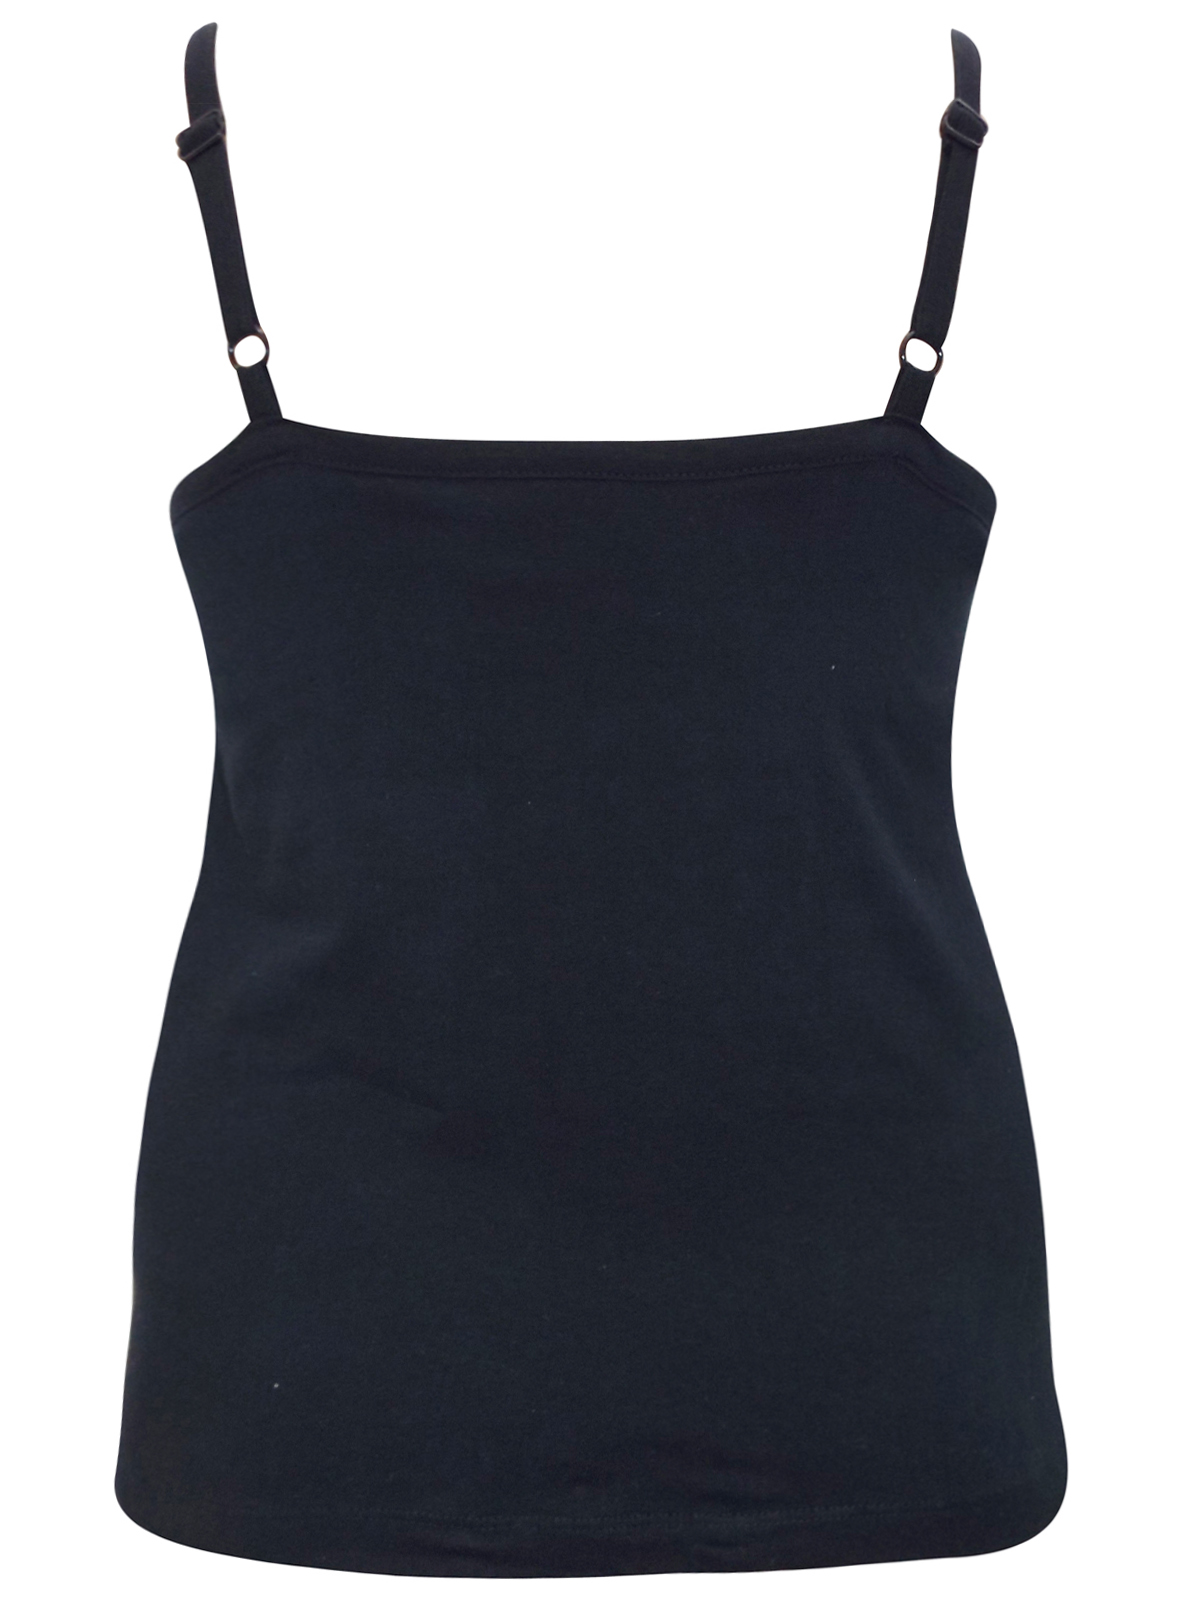 3vans BLACK Strappy Secret Support Cami Vest - Plus Size 14/16 to 30/32